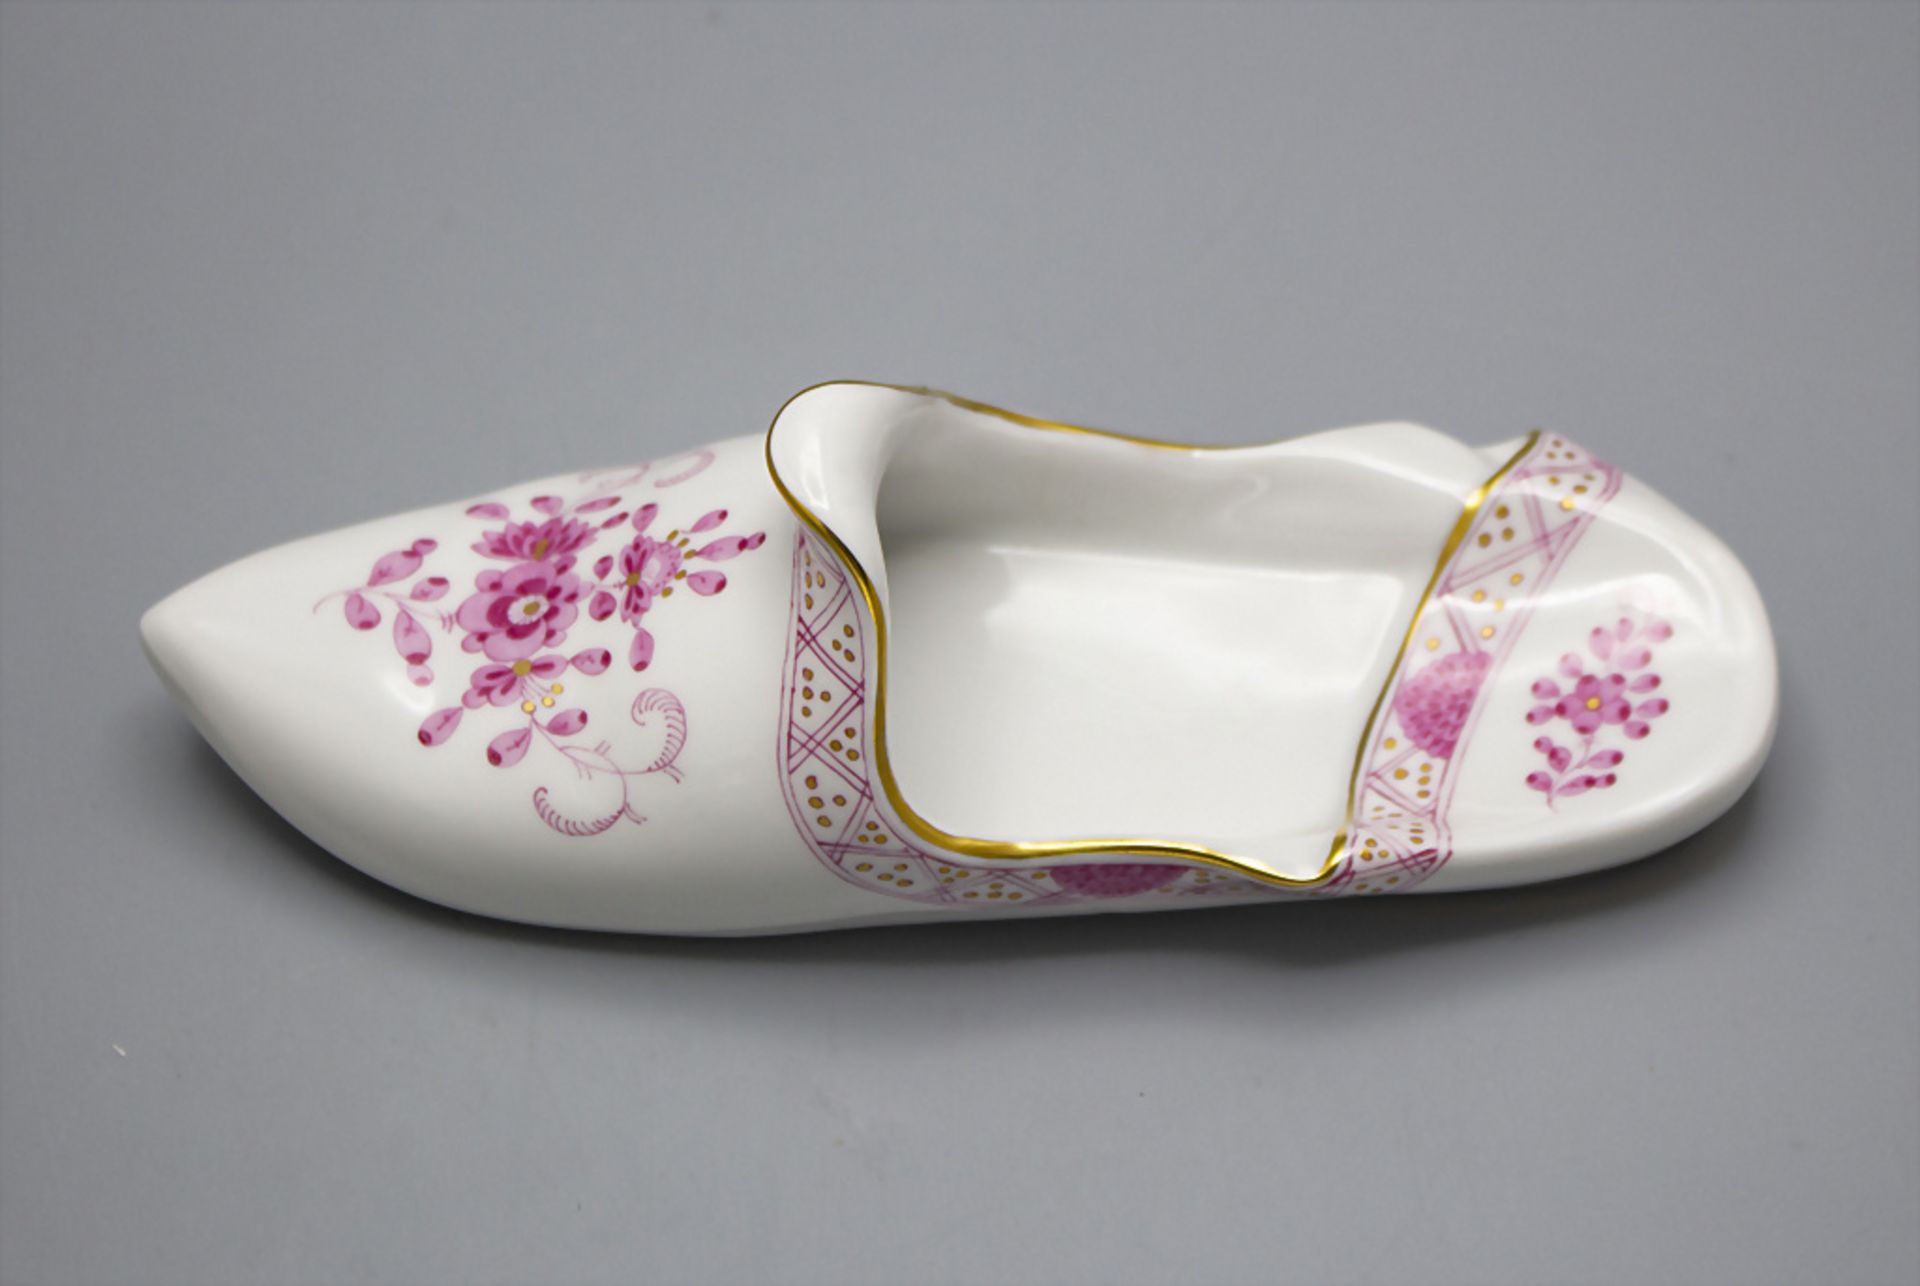 Porzellan Schuh / A porcelain slipper, Meissen, 20. Jh. - Bild 2 aus 3